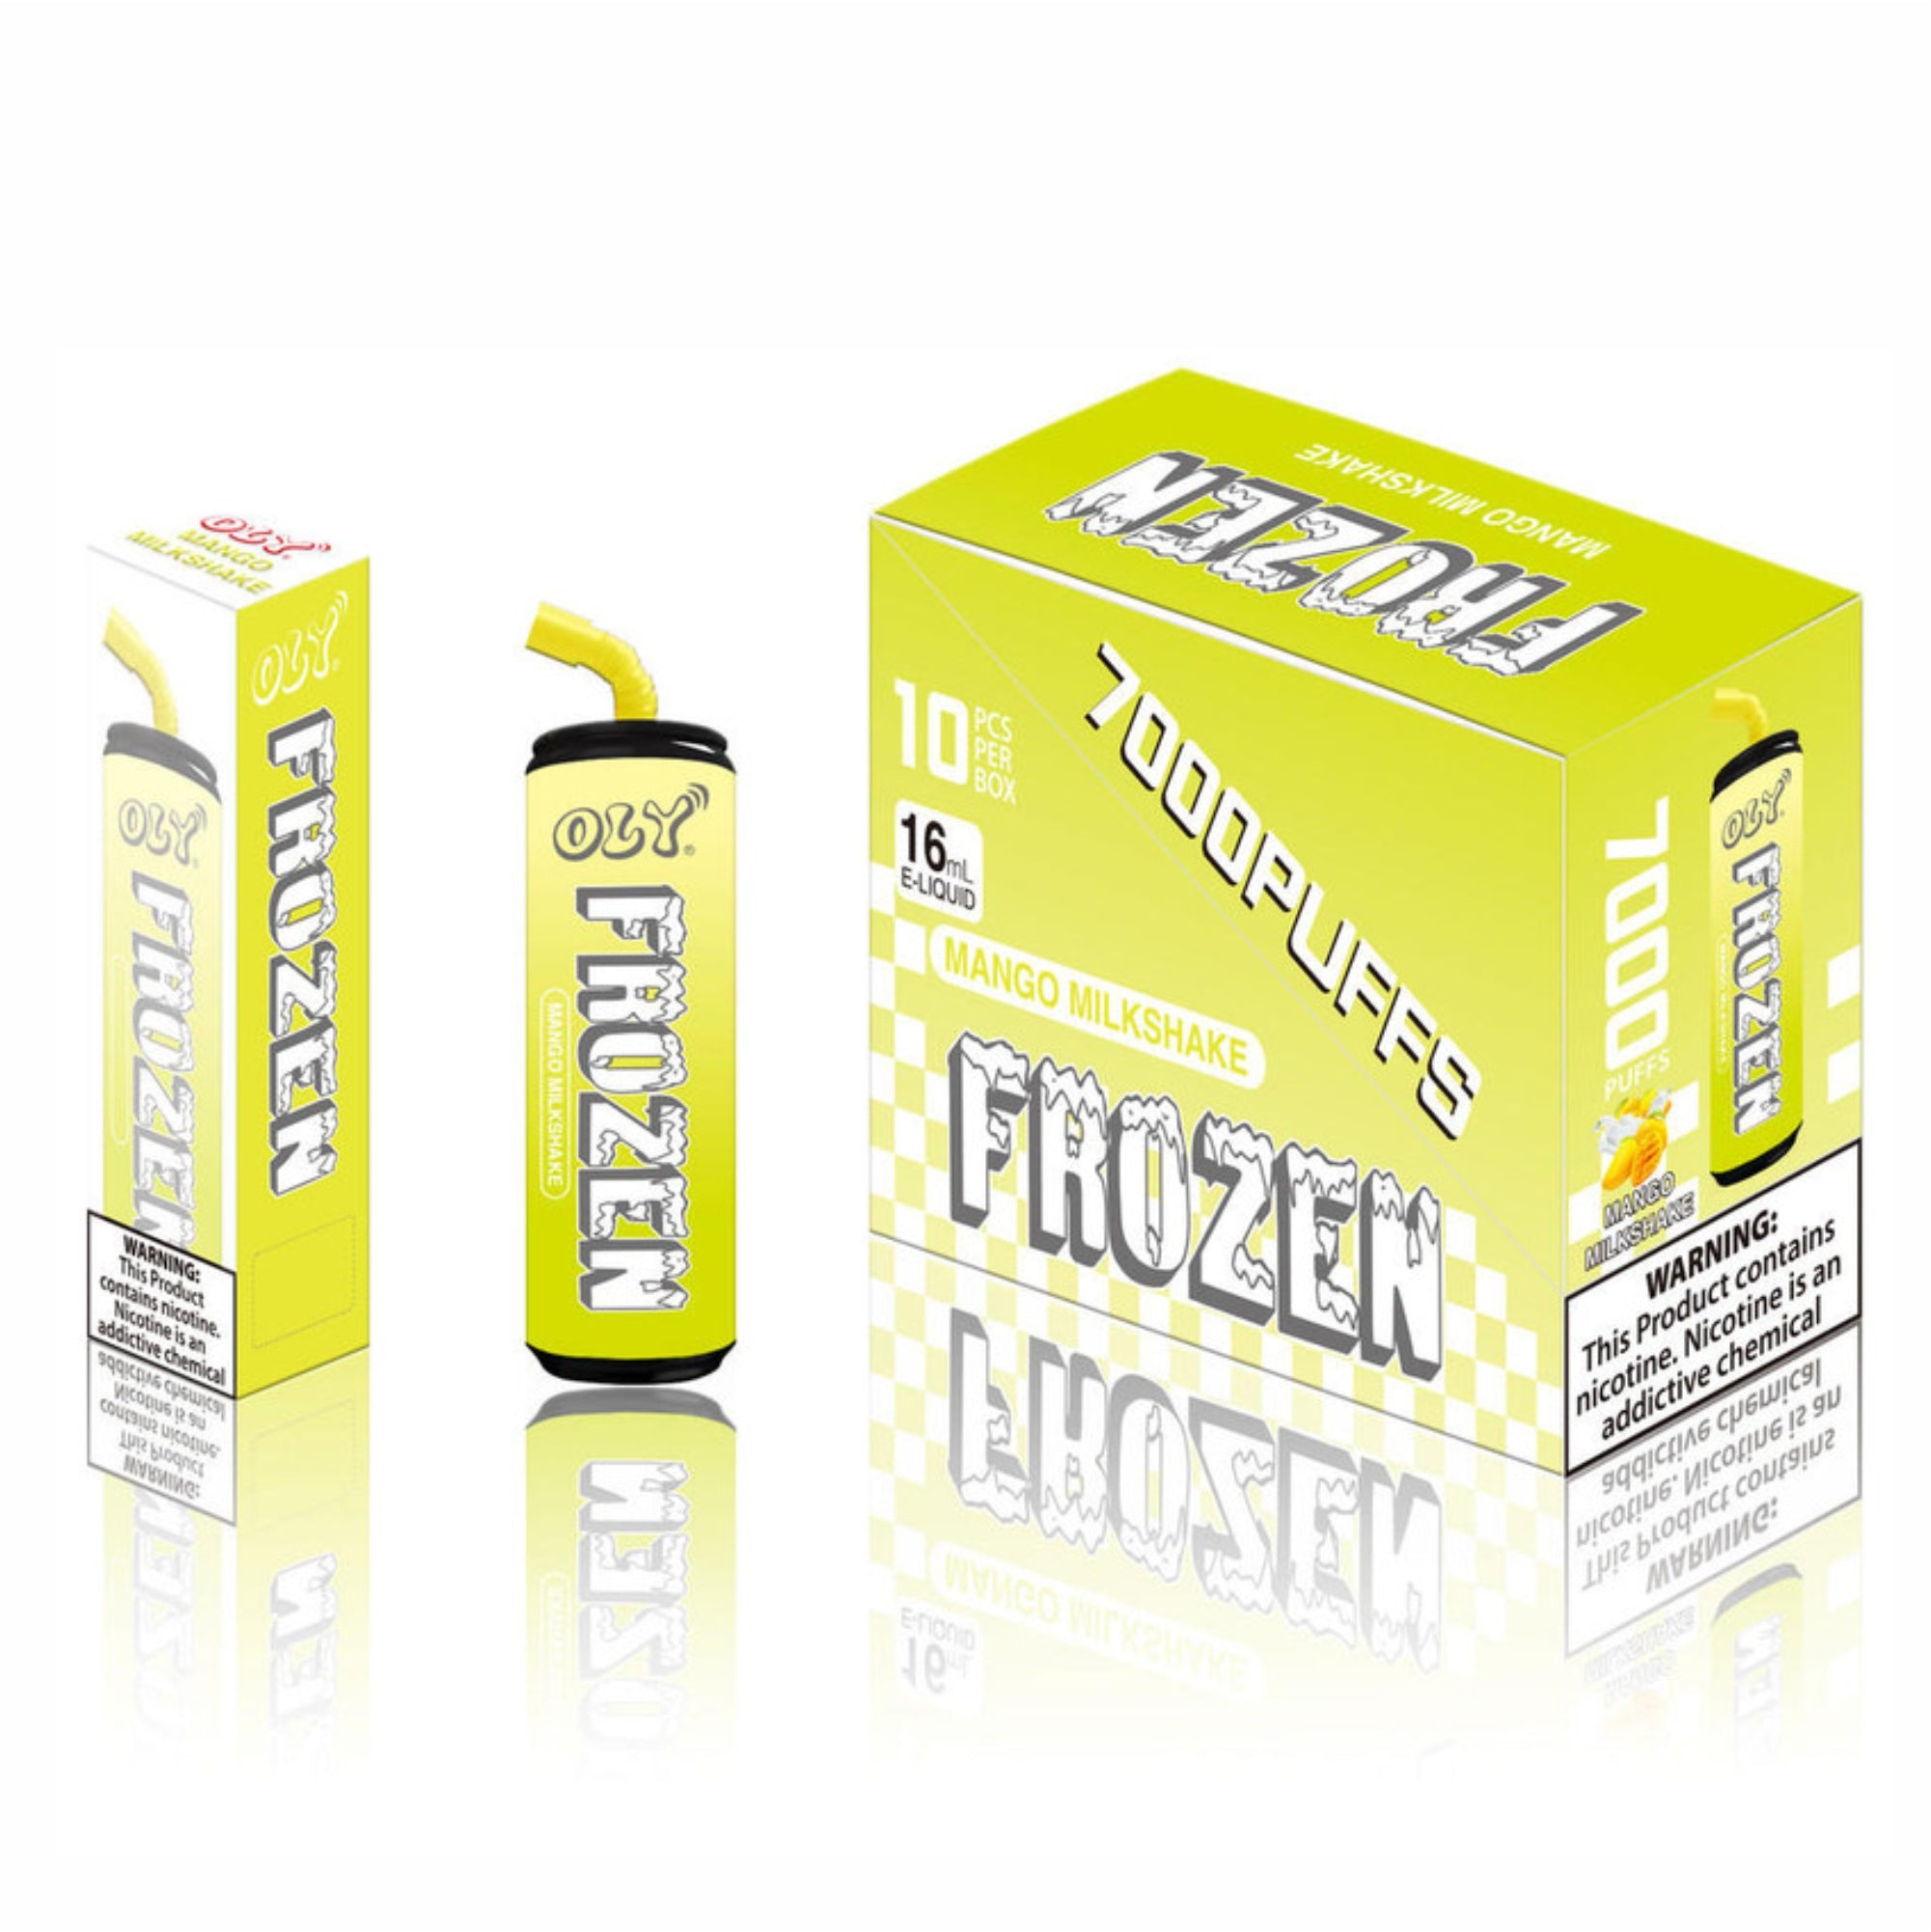 Oly Frozen 7000 Puffs Rechargeable Disposable Vape Wholesale – 1 Box / 10pcs